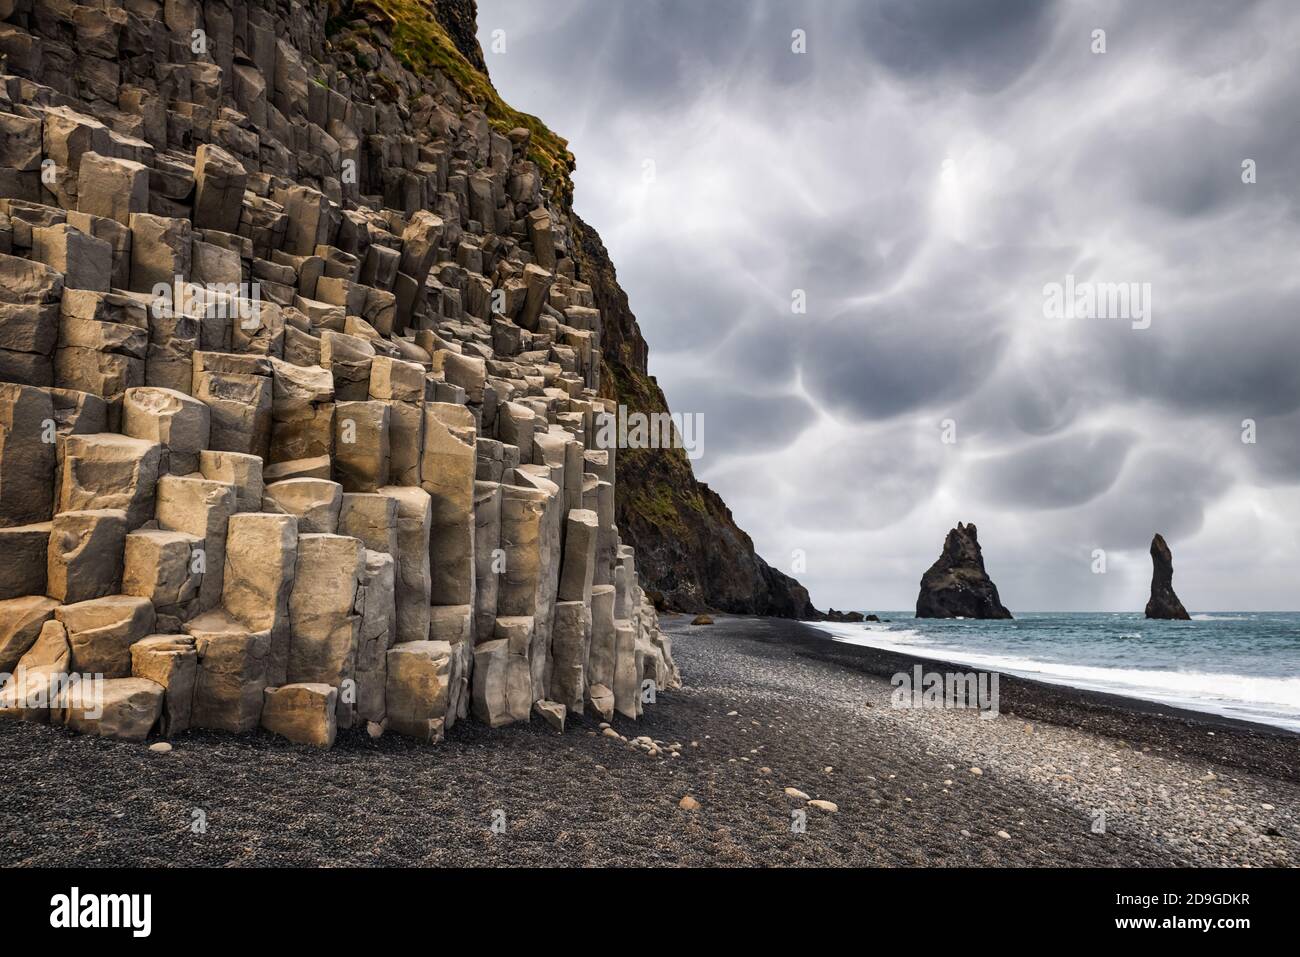 Vista incredibile sulla spiaggia nera e le scogliere di Troll Toes in tempo nuvoloso. Cielo tempestoso con minacciose nuvole di mammato sullo sfondo. Reynisdrangar, Vik, Islanda. Fotografia di paesaggio Foto Stock